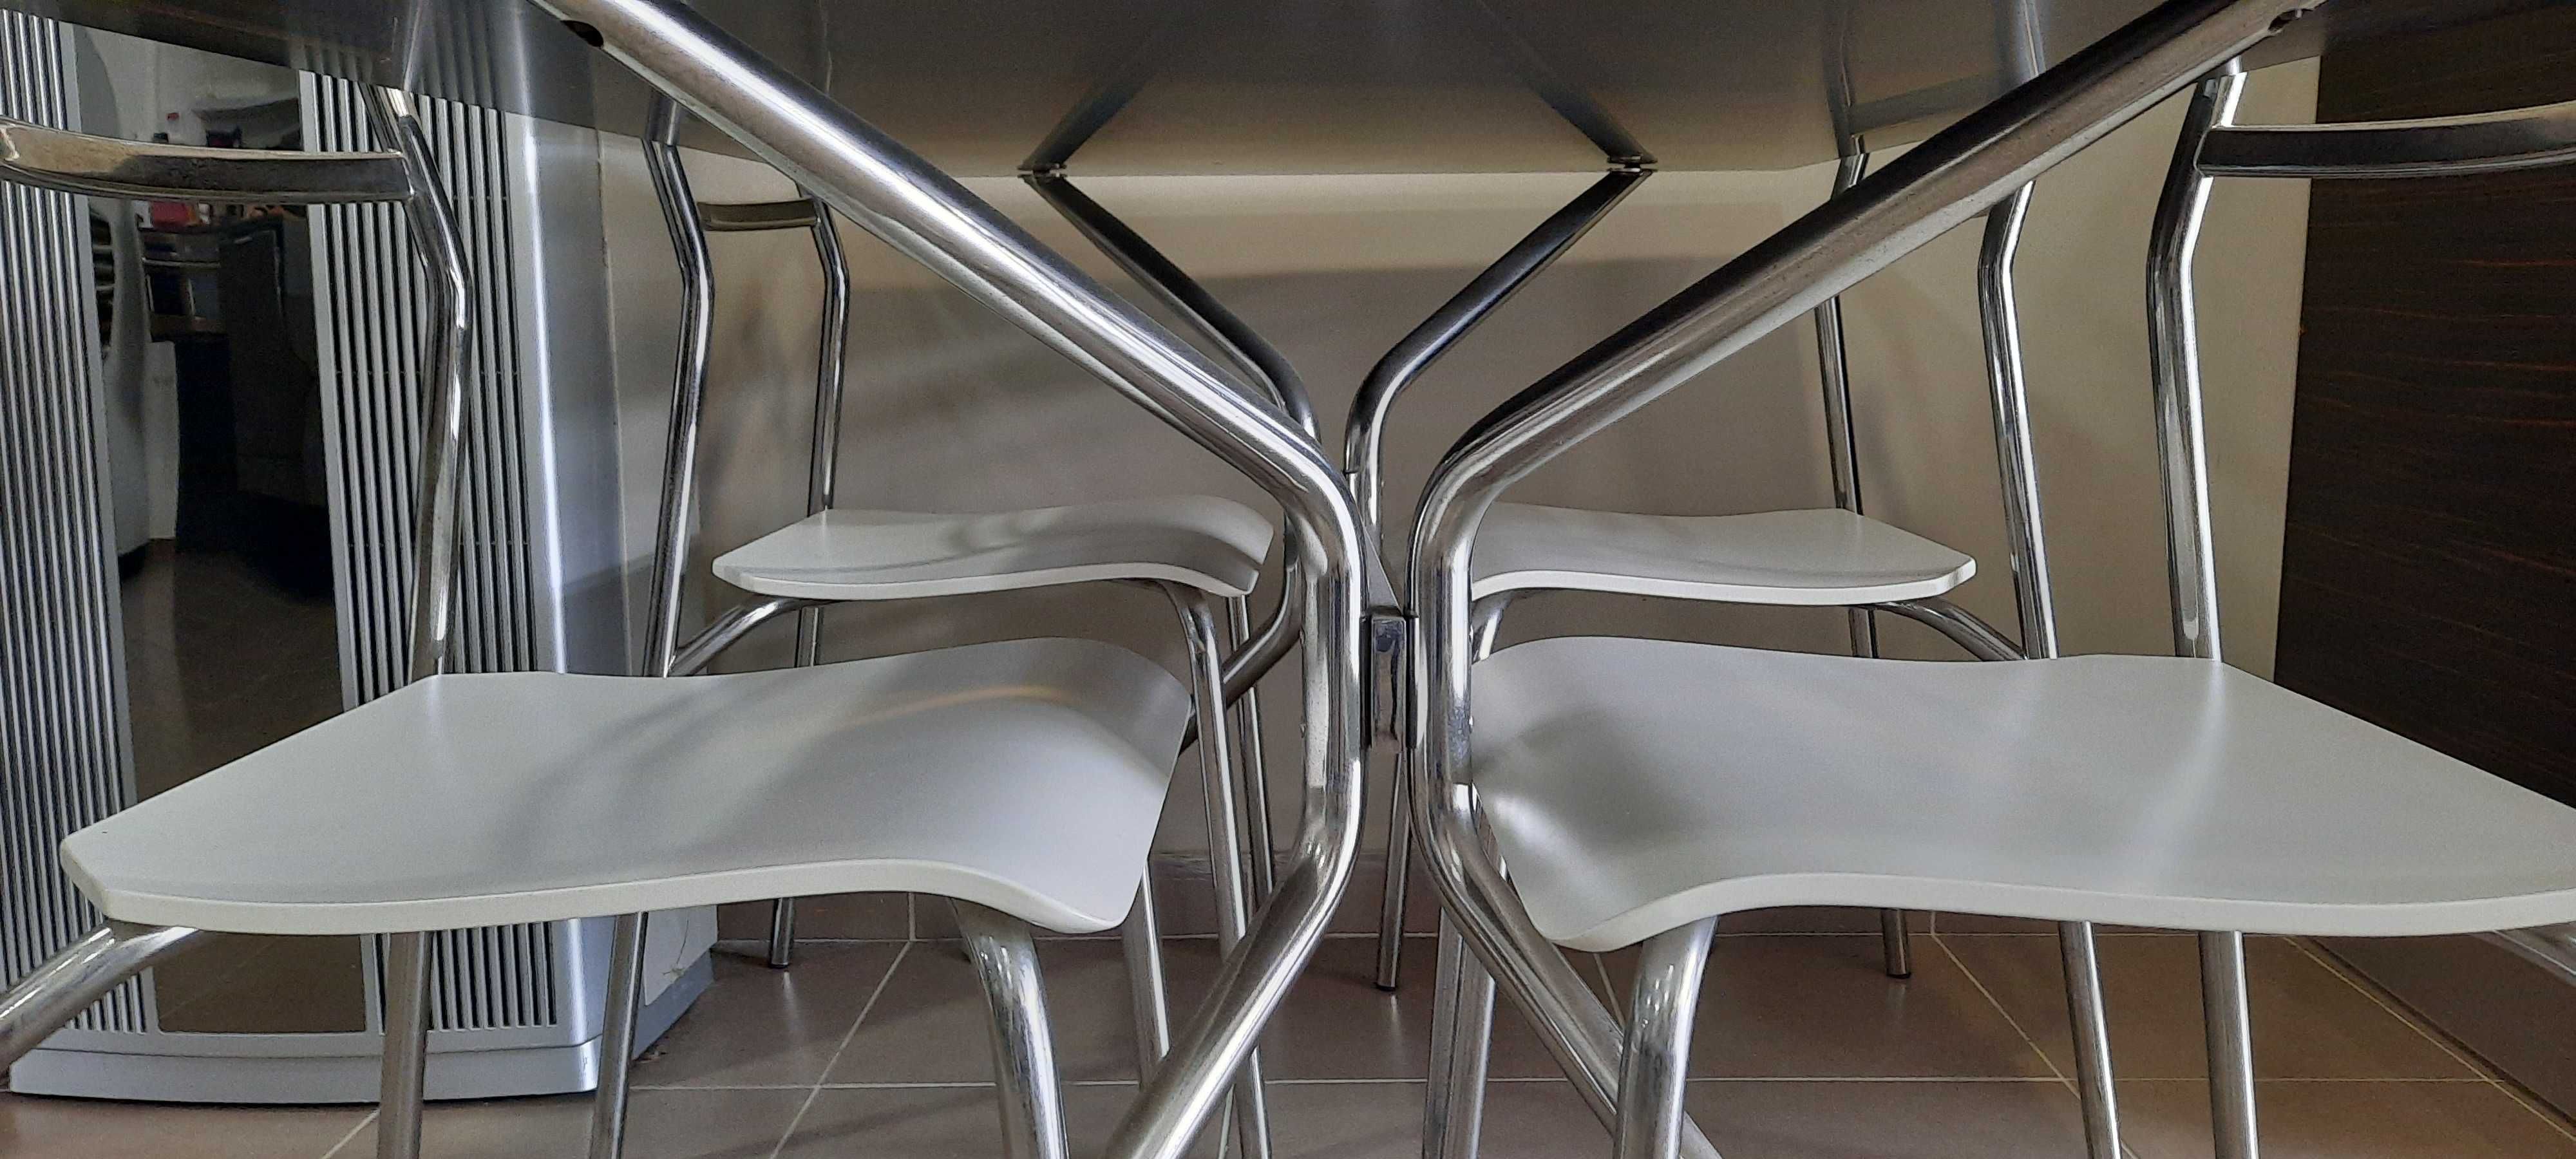 Mesa cozinha vidro preto/cromado s/cadeiras (arti.exposicao).